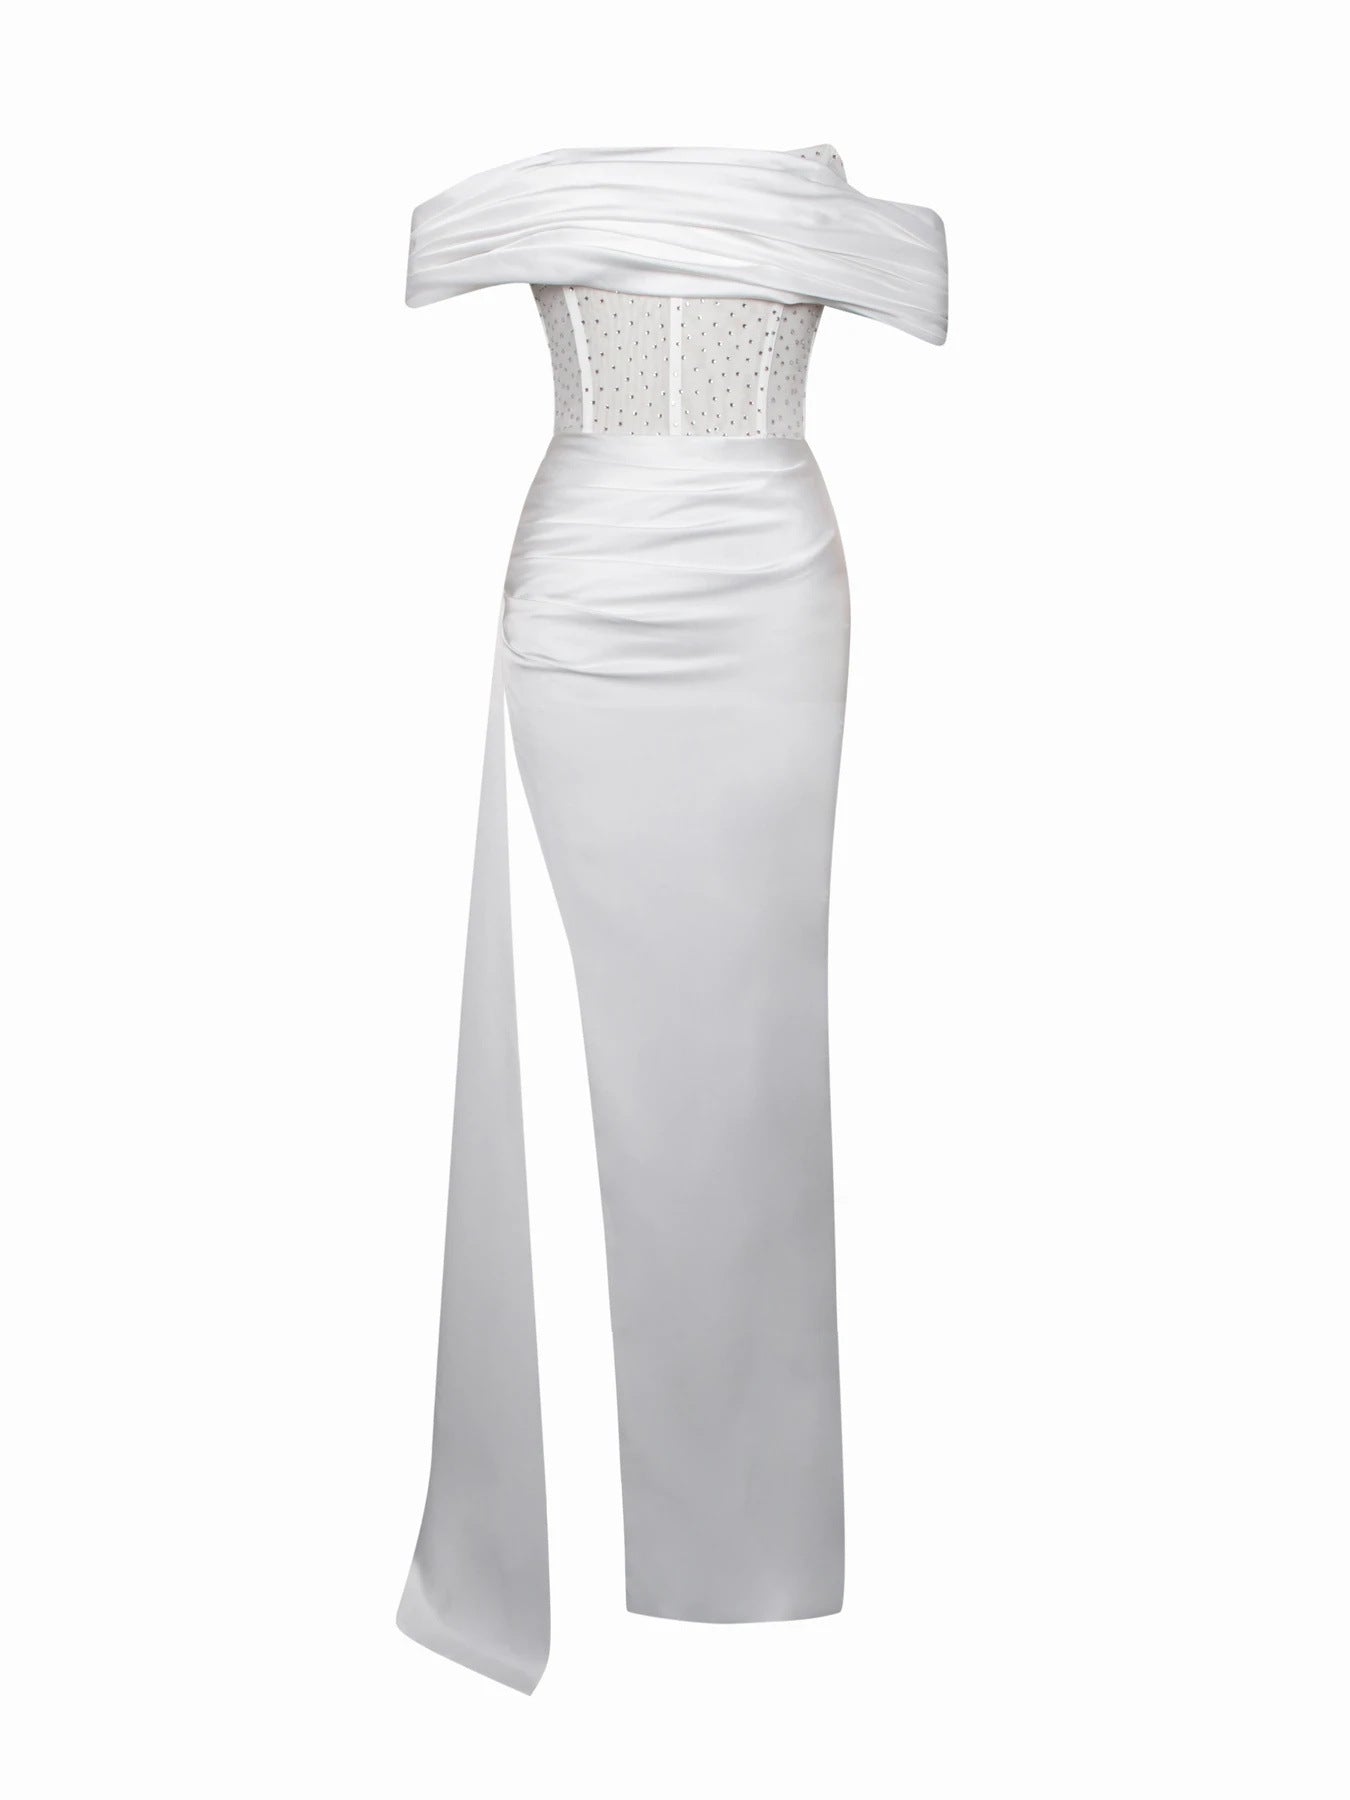 Esme gown Off-shoulder Long Slit White Bandage Dress